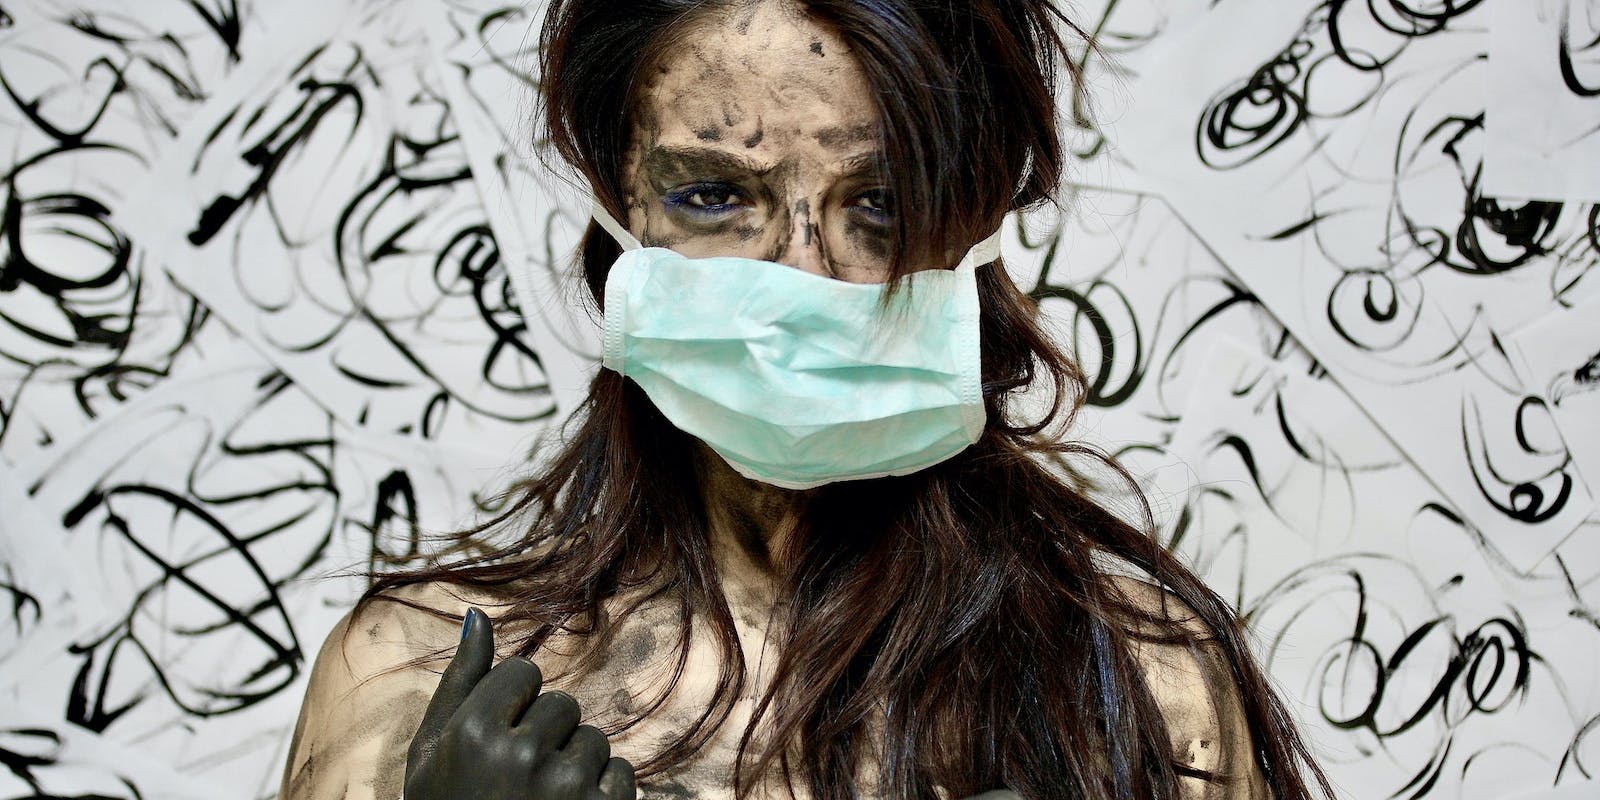 Una mujer enmascarada y agotada cubierta de barro mira fijamente a la cámara con un telón de fondo de turbulencias artísticas y turbias sobre una pared blanca